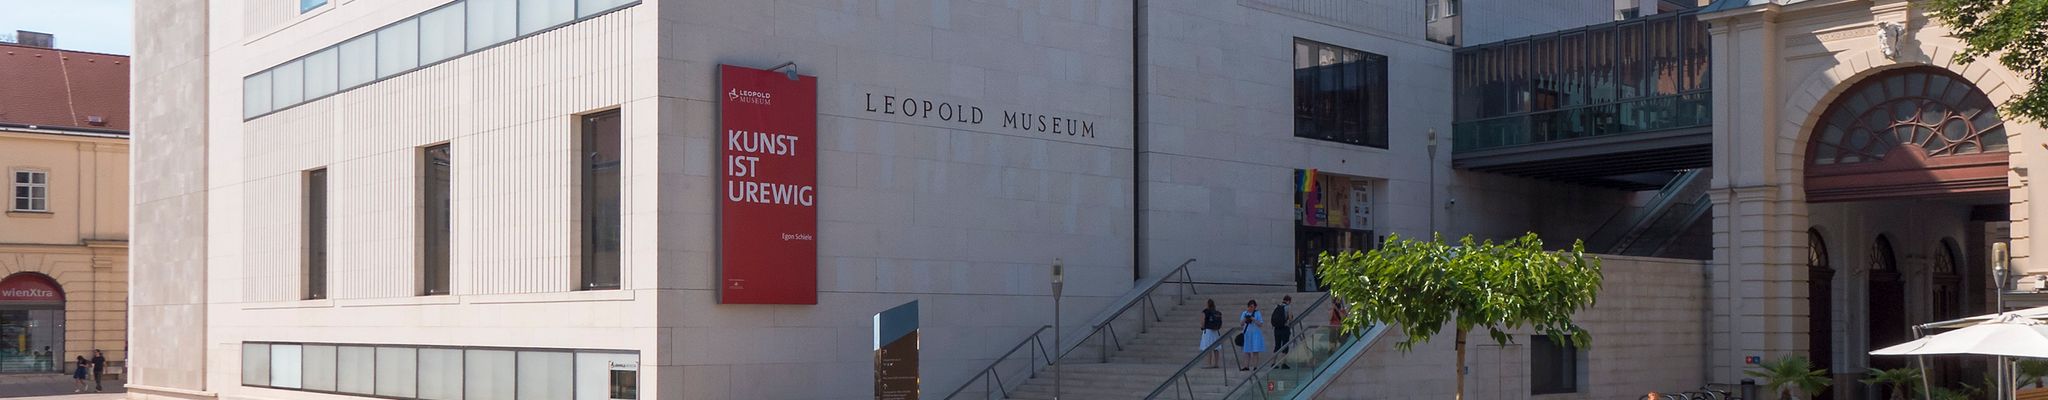 Μουσείο Leopold